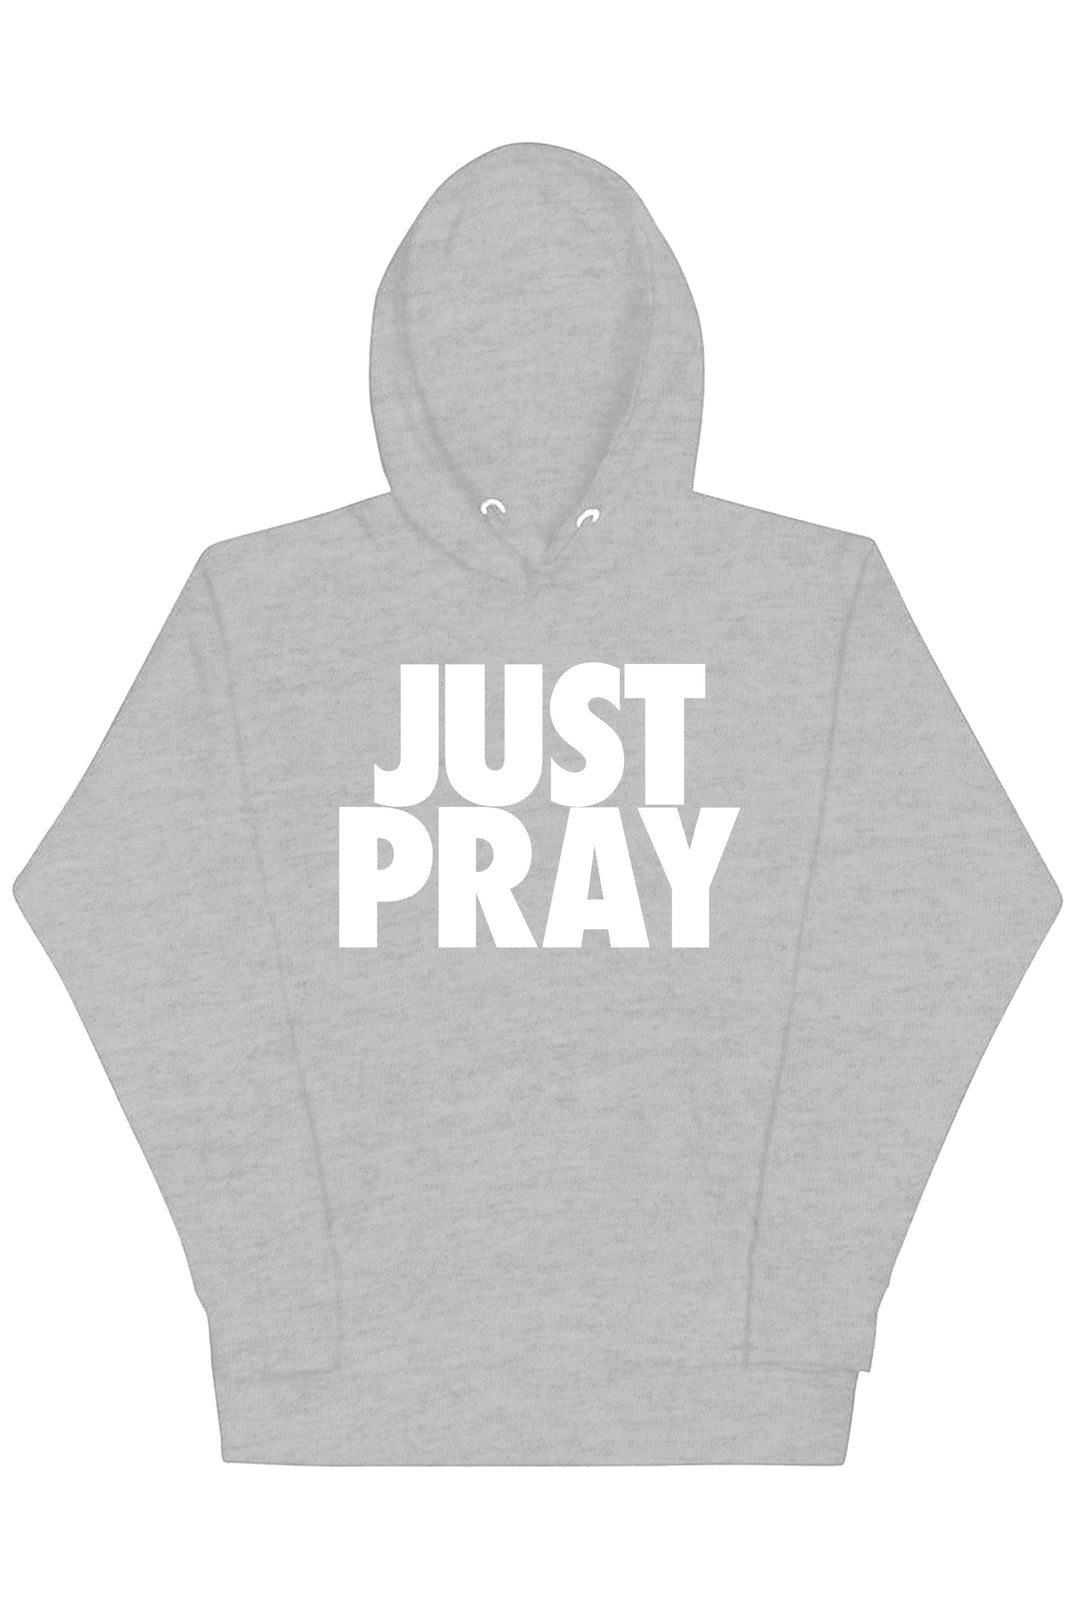 Just Pray Hoodie (White Logo) - Zamage